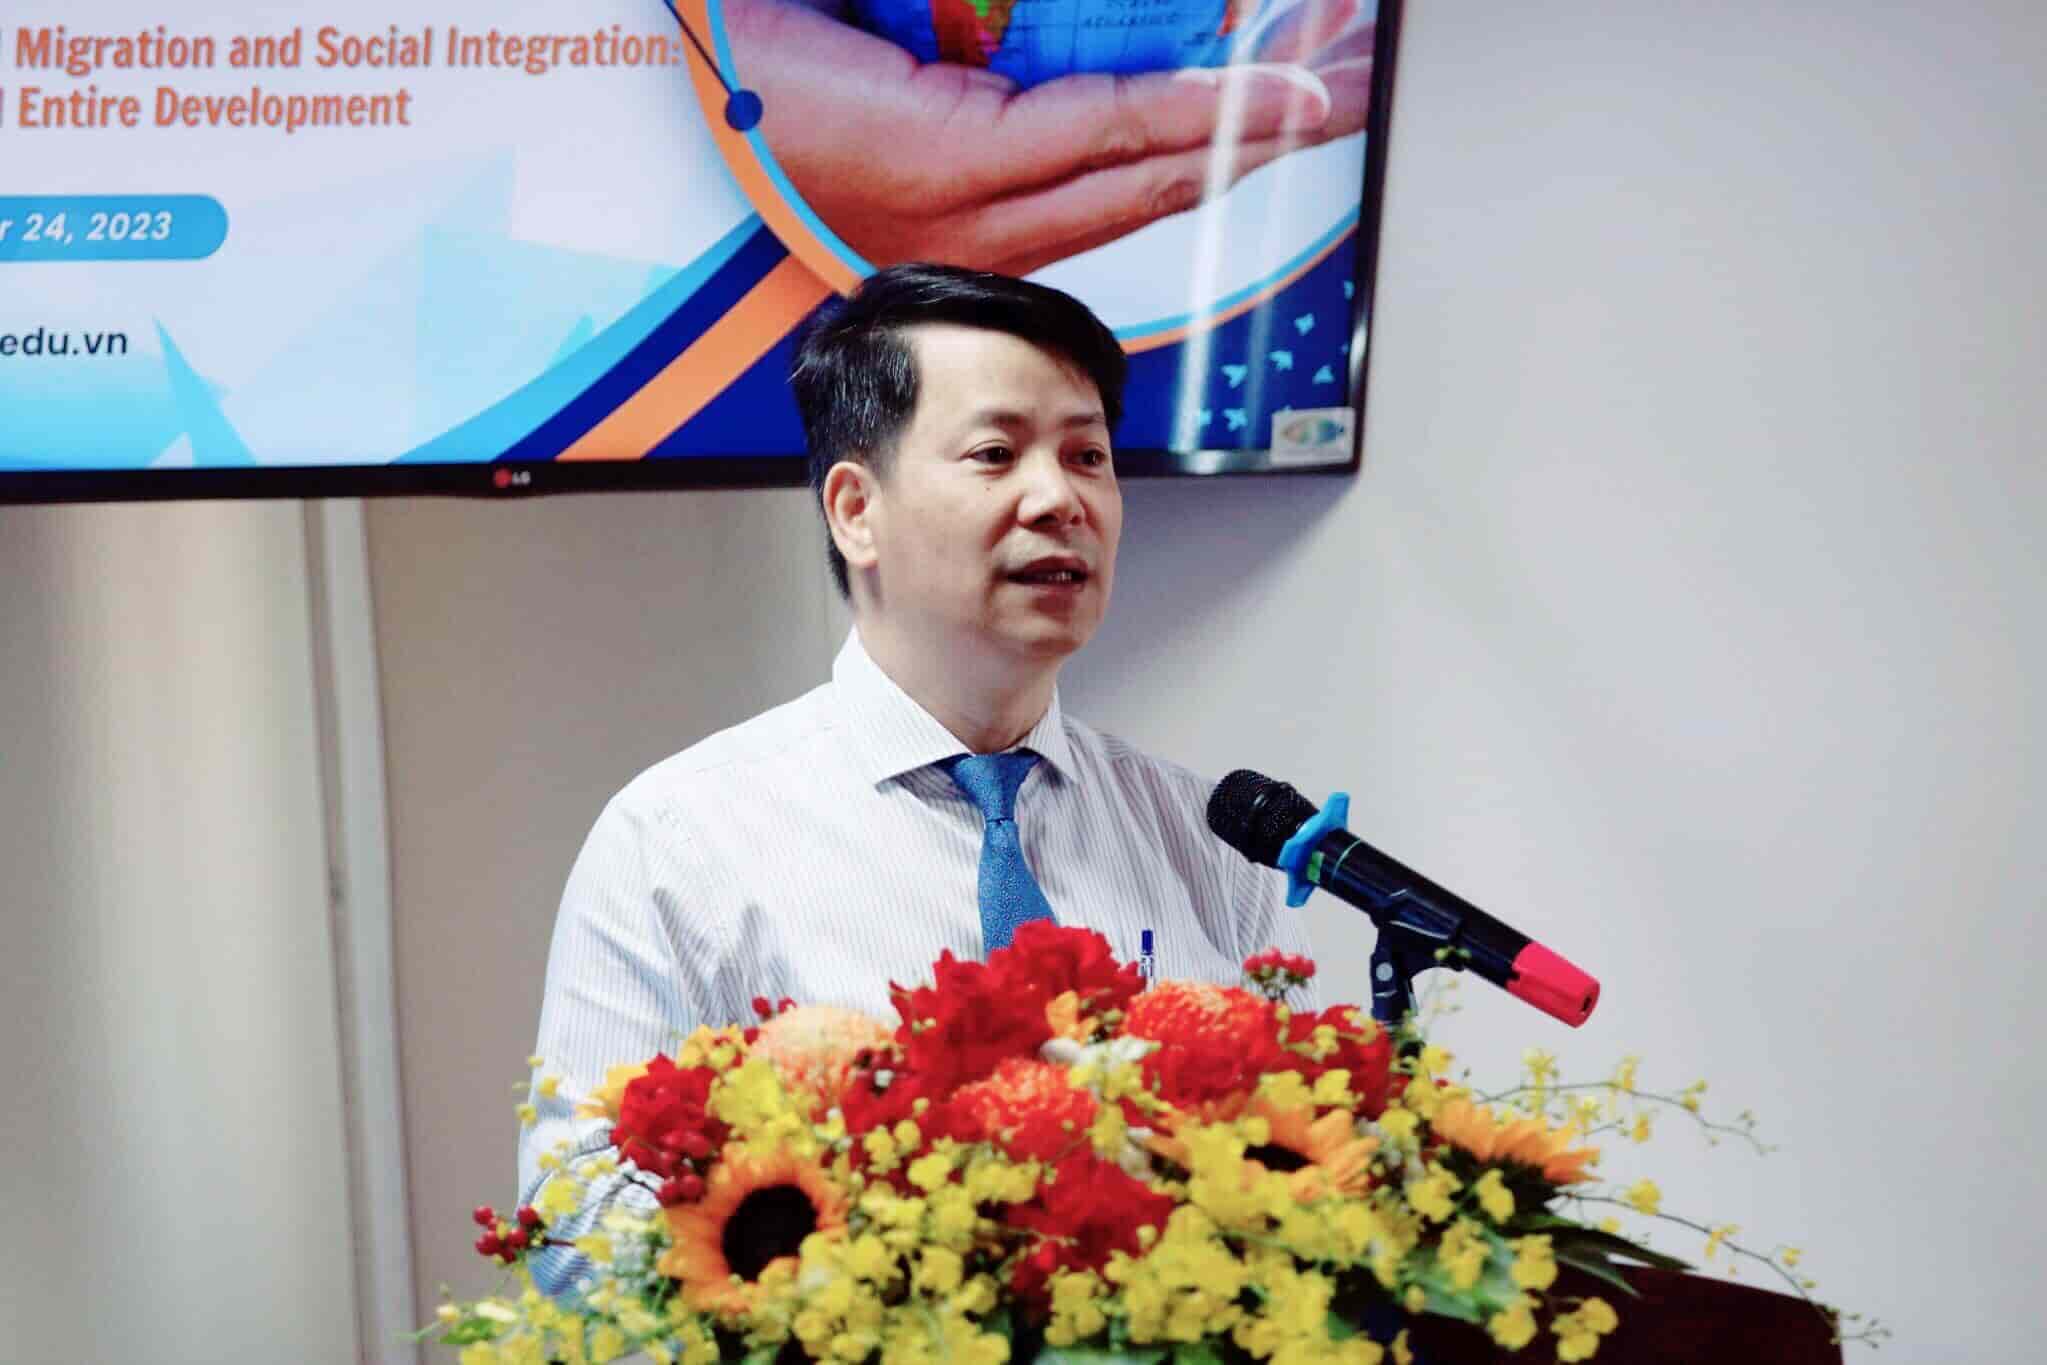 PGS.TS Trần Quang Tiến - Giám đốc Học viện Phụ nữ Việt Nam khẳng định, di cư là xu hướng phát triển mạnh mẽ trong thế kỷ 21. Ảnh: Trà My  